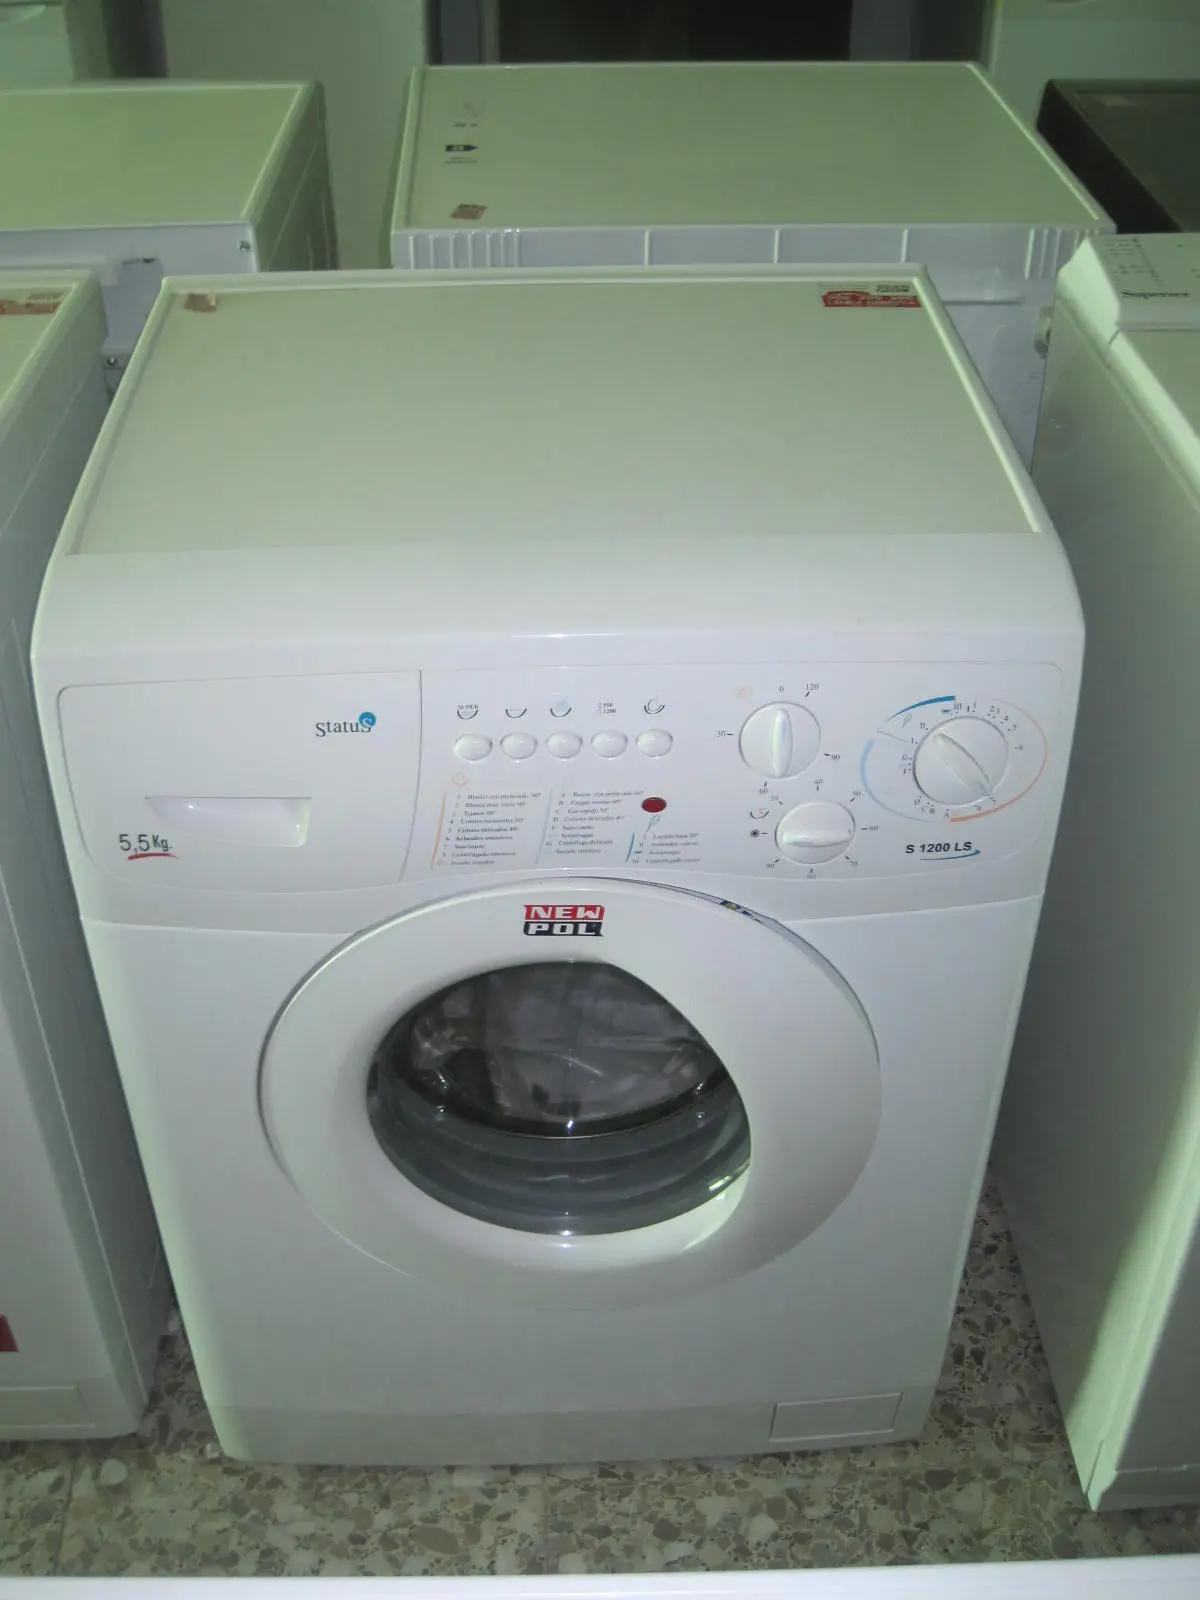 lavadora status - Cómo saber si una lavadora está en buen estado